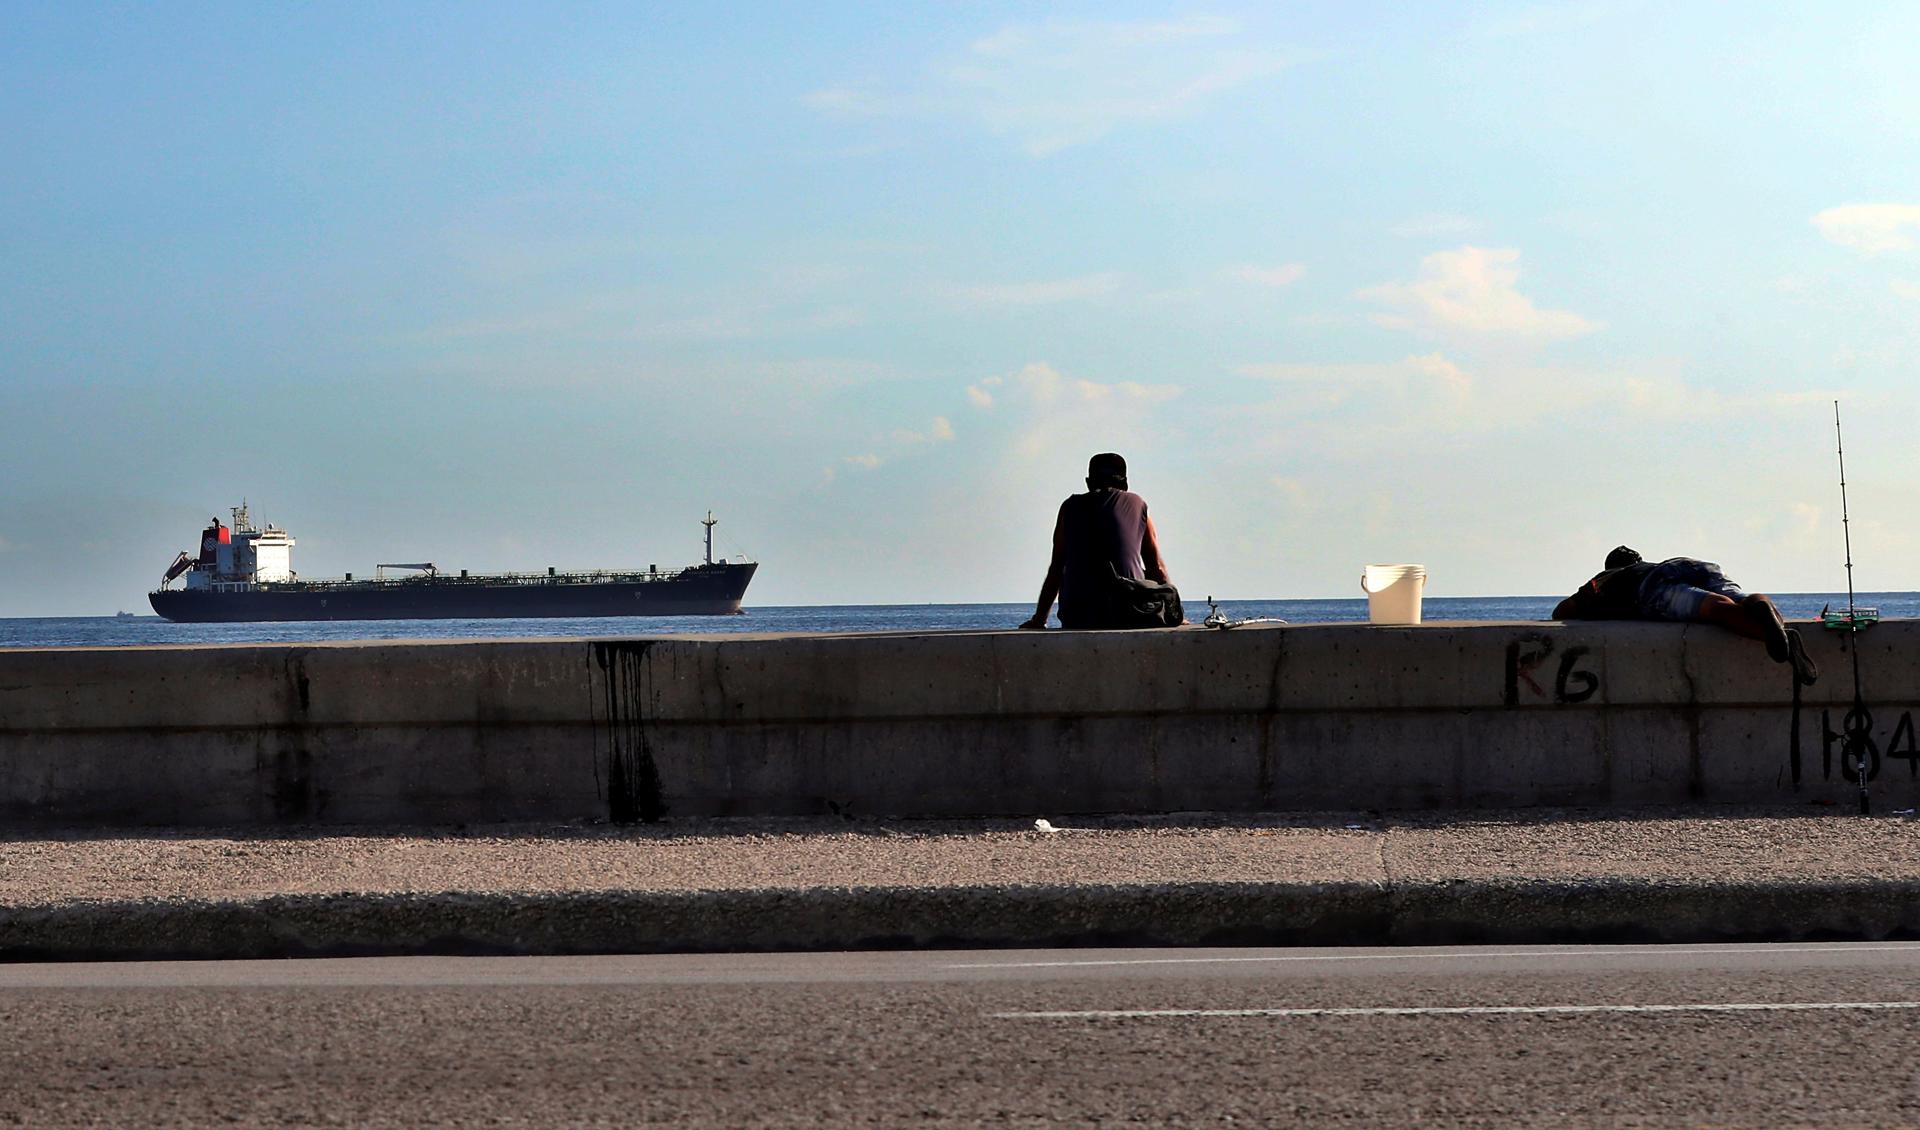 Vista de un petrolero que entra en la bahía de La Habana, en una fotografía de archivo. EFE/ Ernesto Mastrascusa